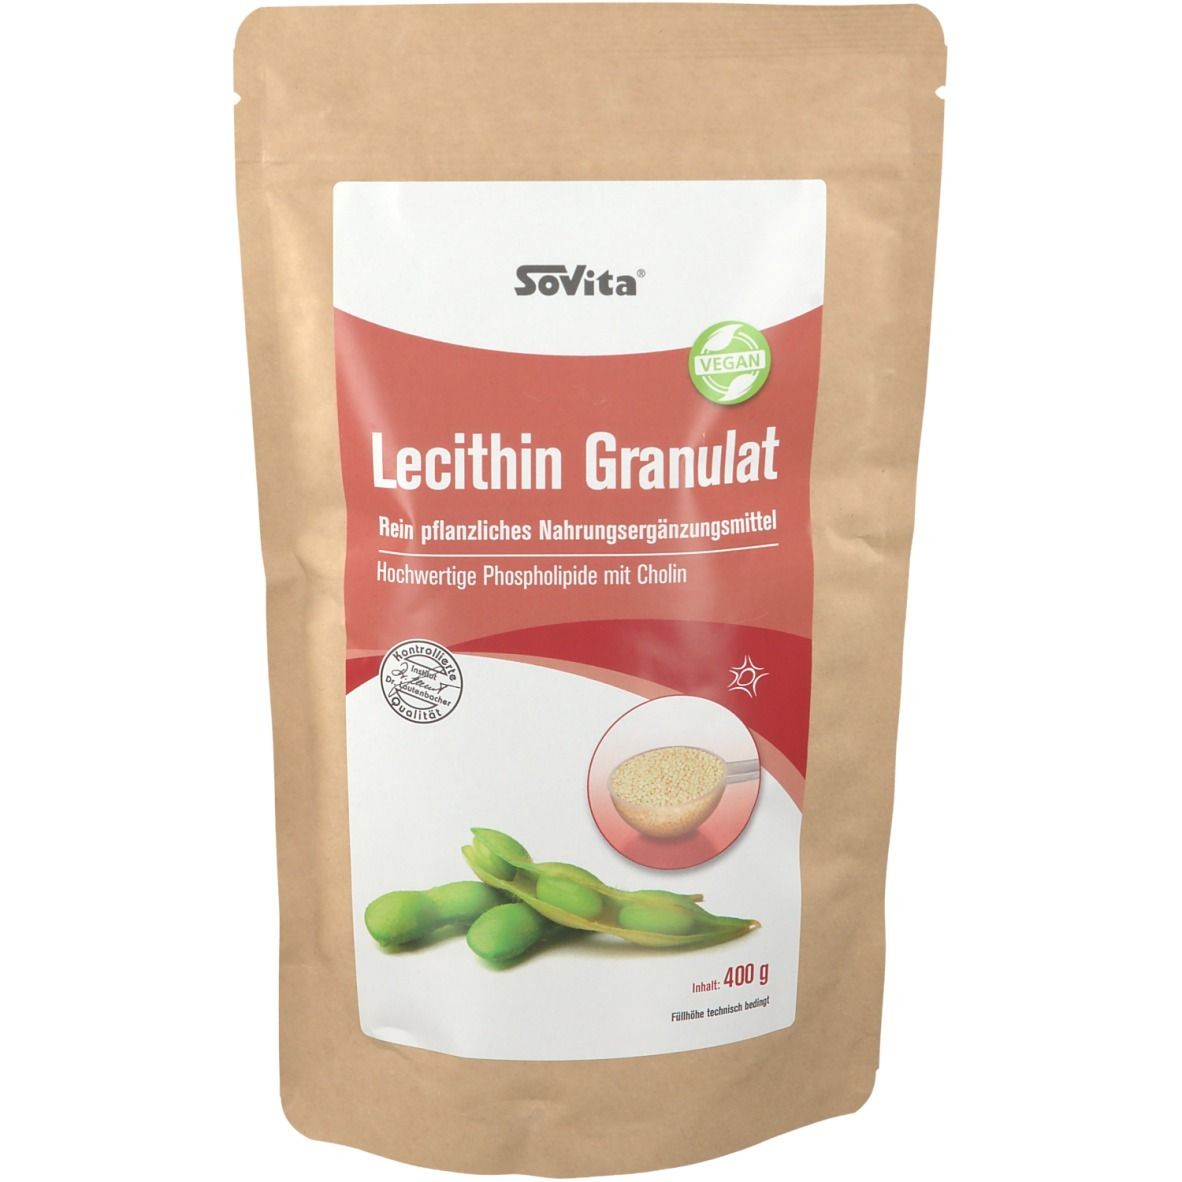 SoVitaactive® Lecithin Granulat